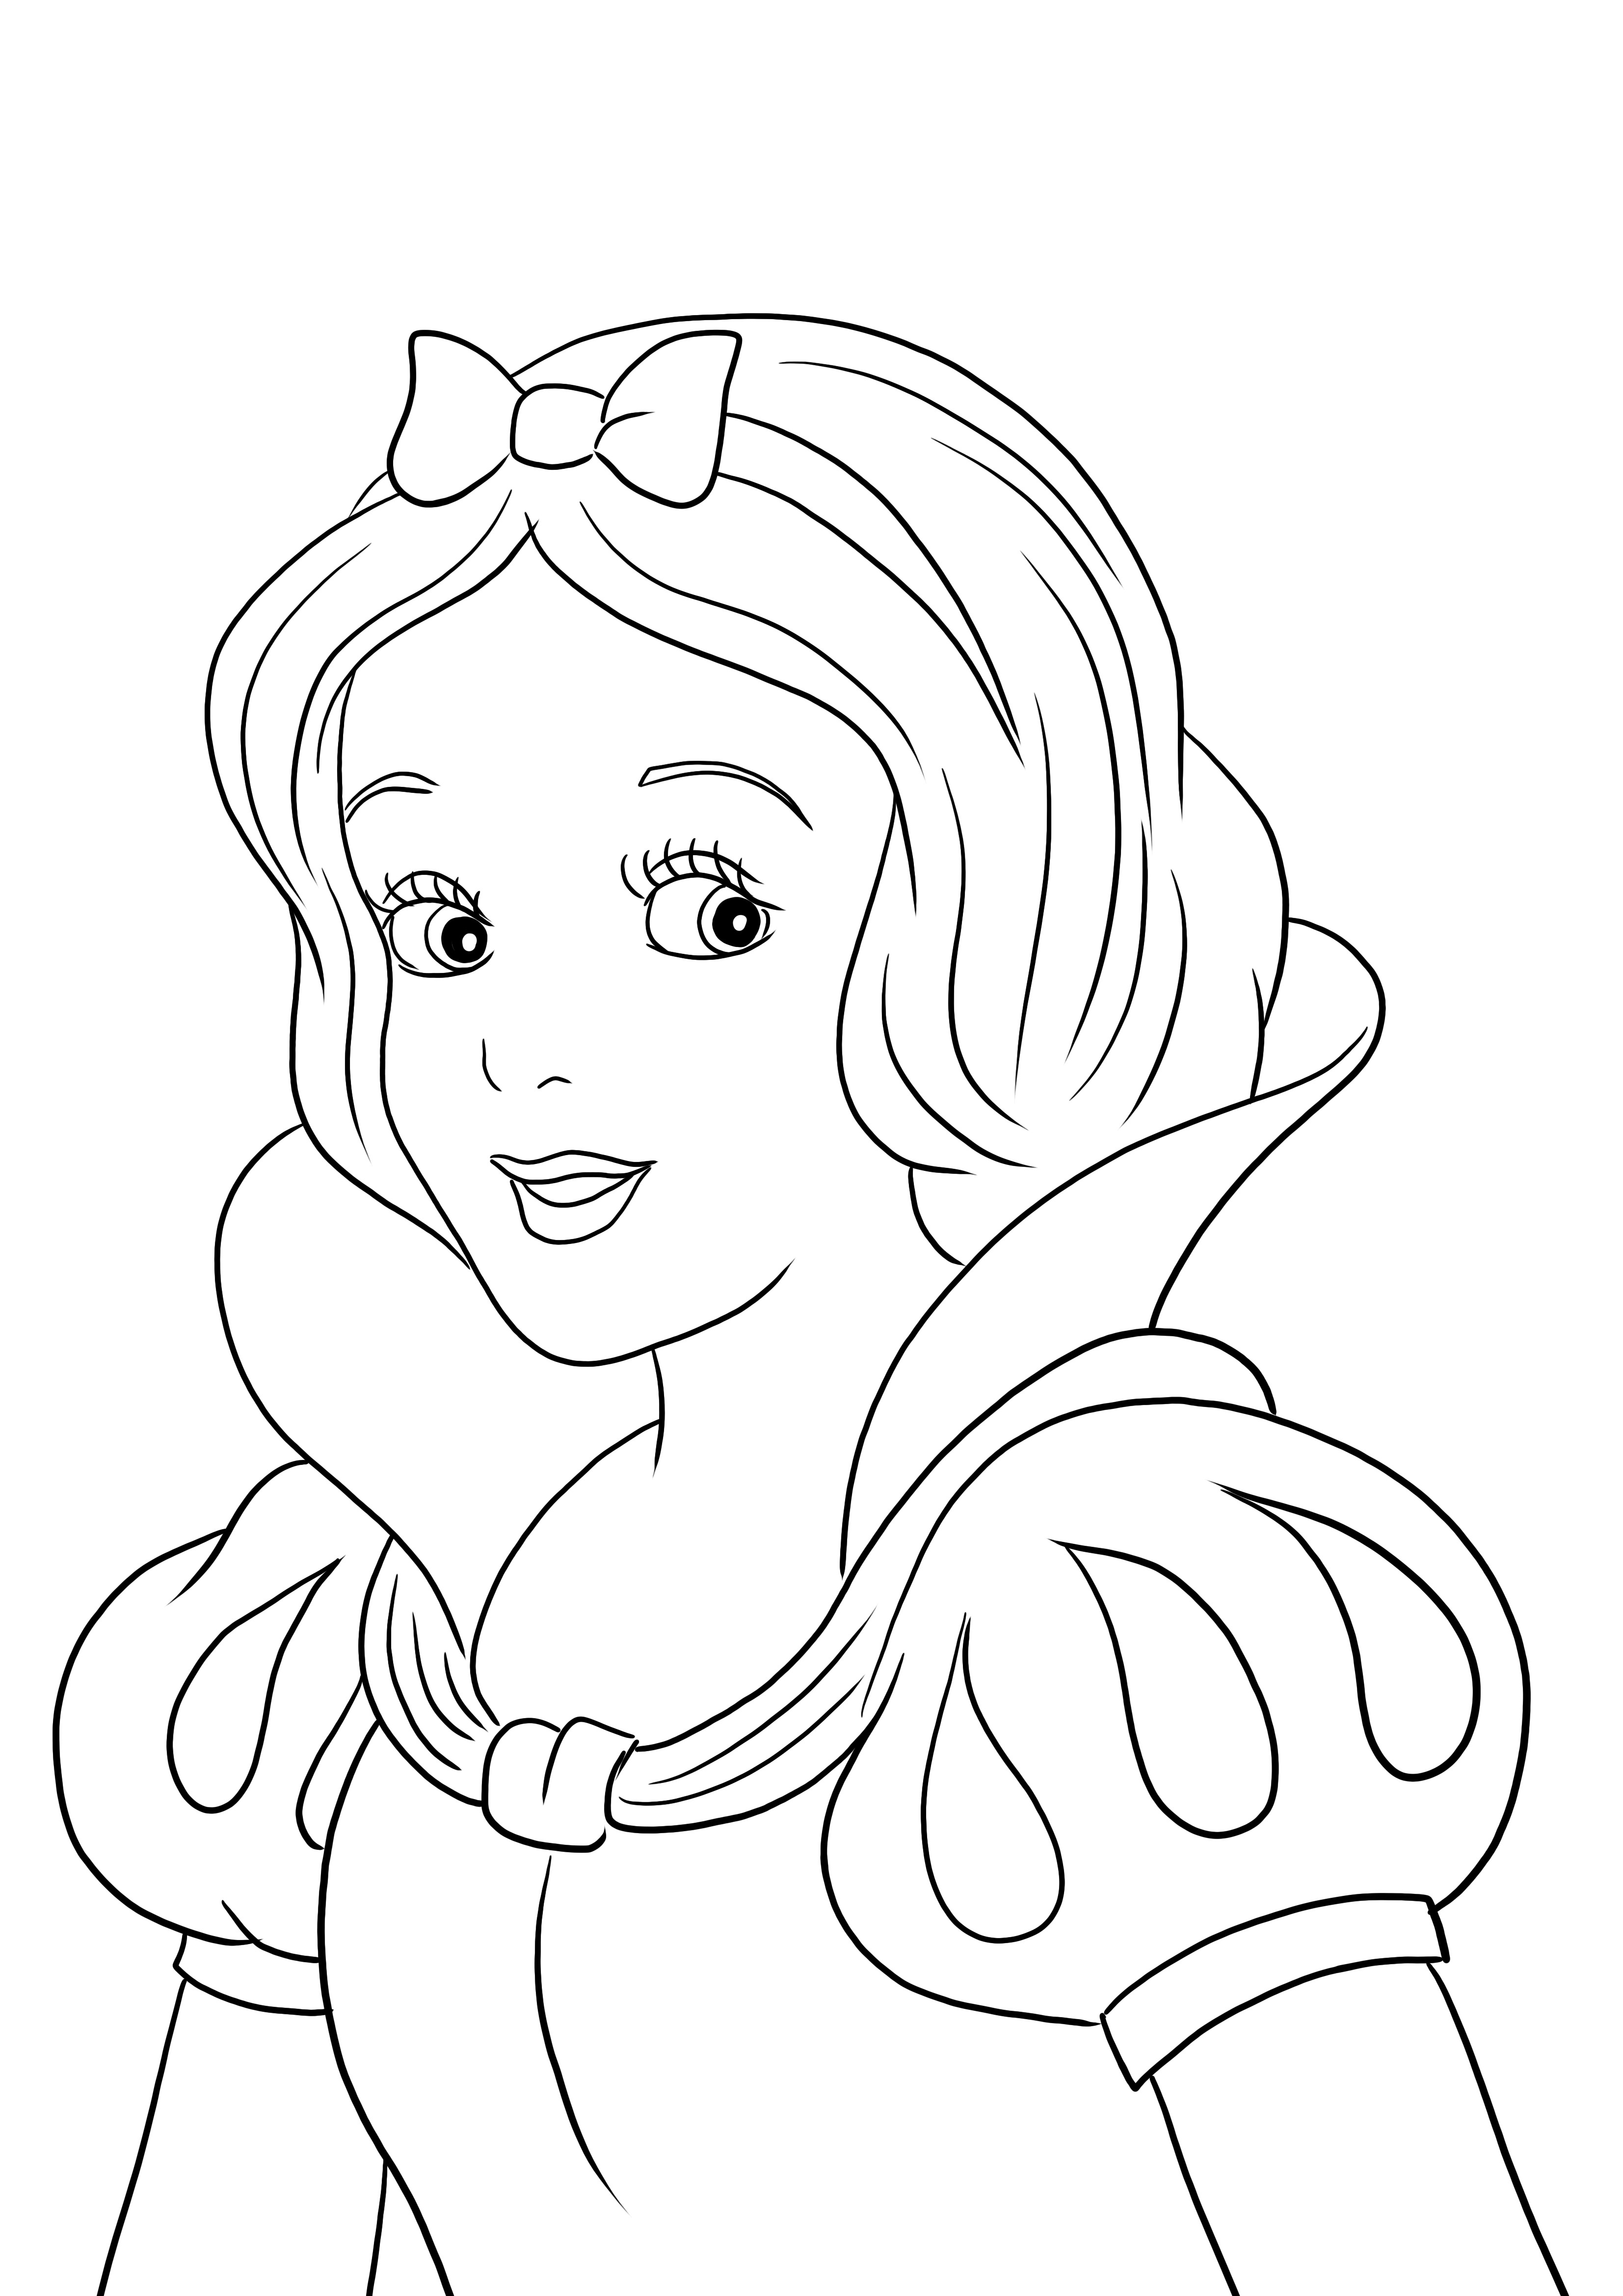 Gambar mewarnai Putri Salju yang lucu-mudah dan gratis untuk dicetak untuk diwarnai oleh anak-anak